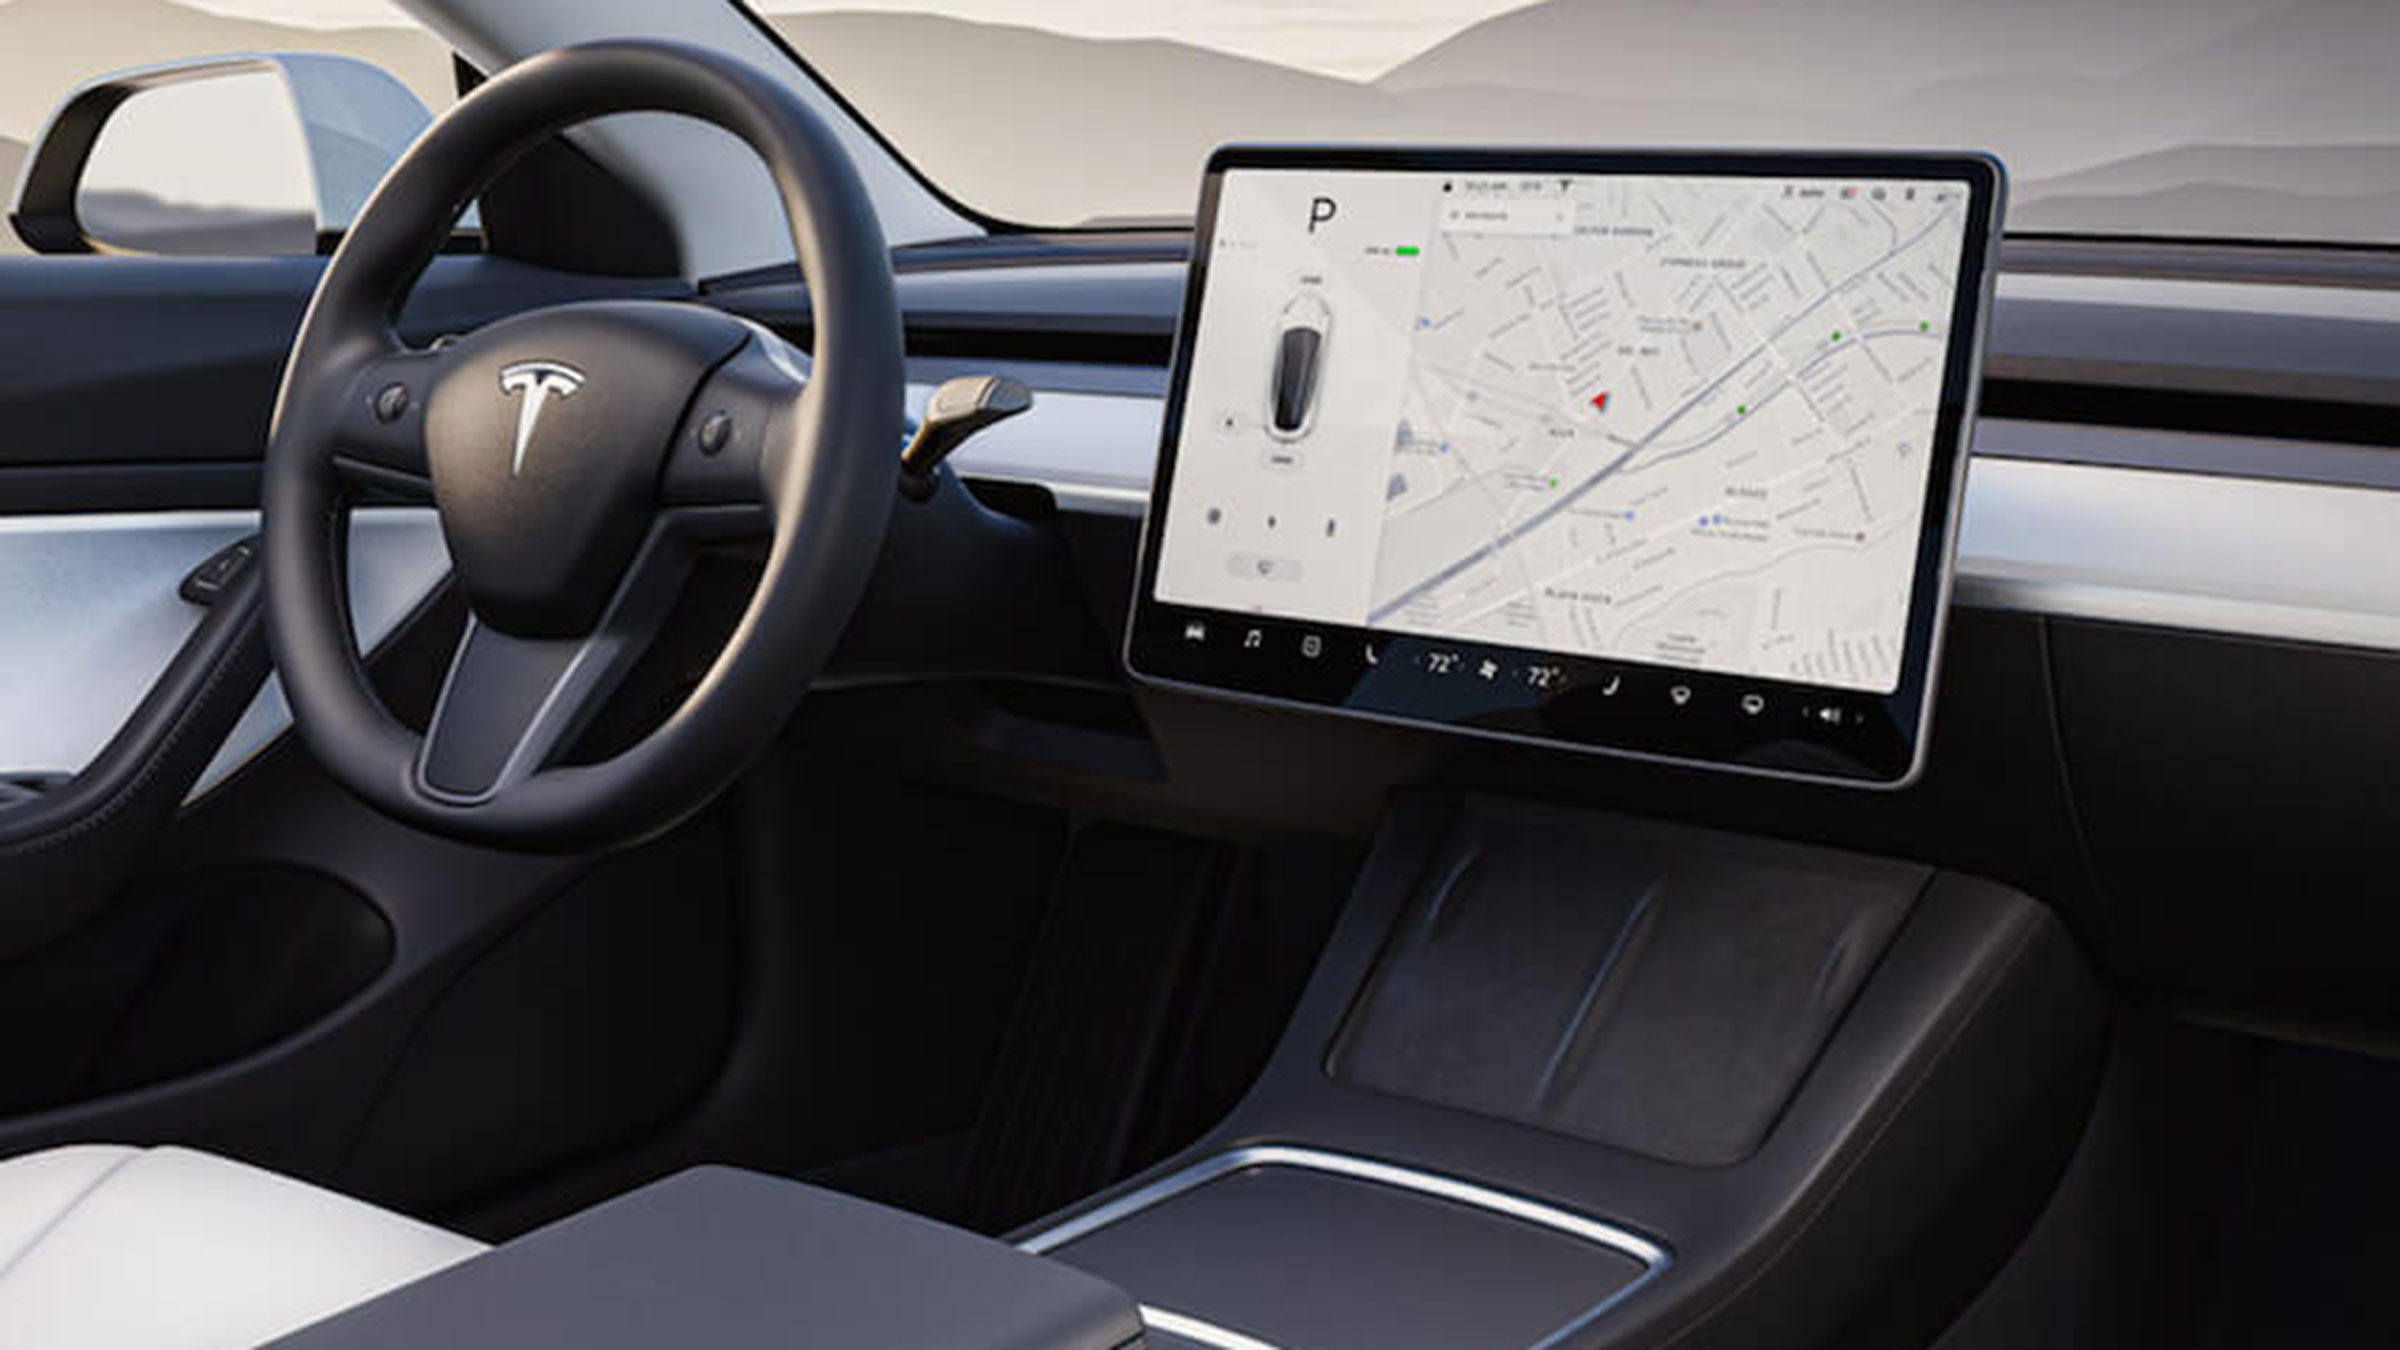 Entretener entregar plato La DGT americana estudia la retirada de 800.000 vehículos Tesla del mercado  por problemas con su software Autopilot | Computer Hoy